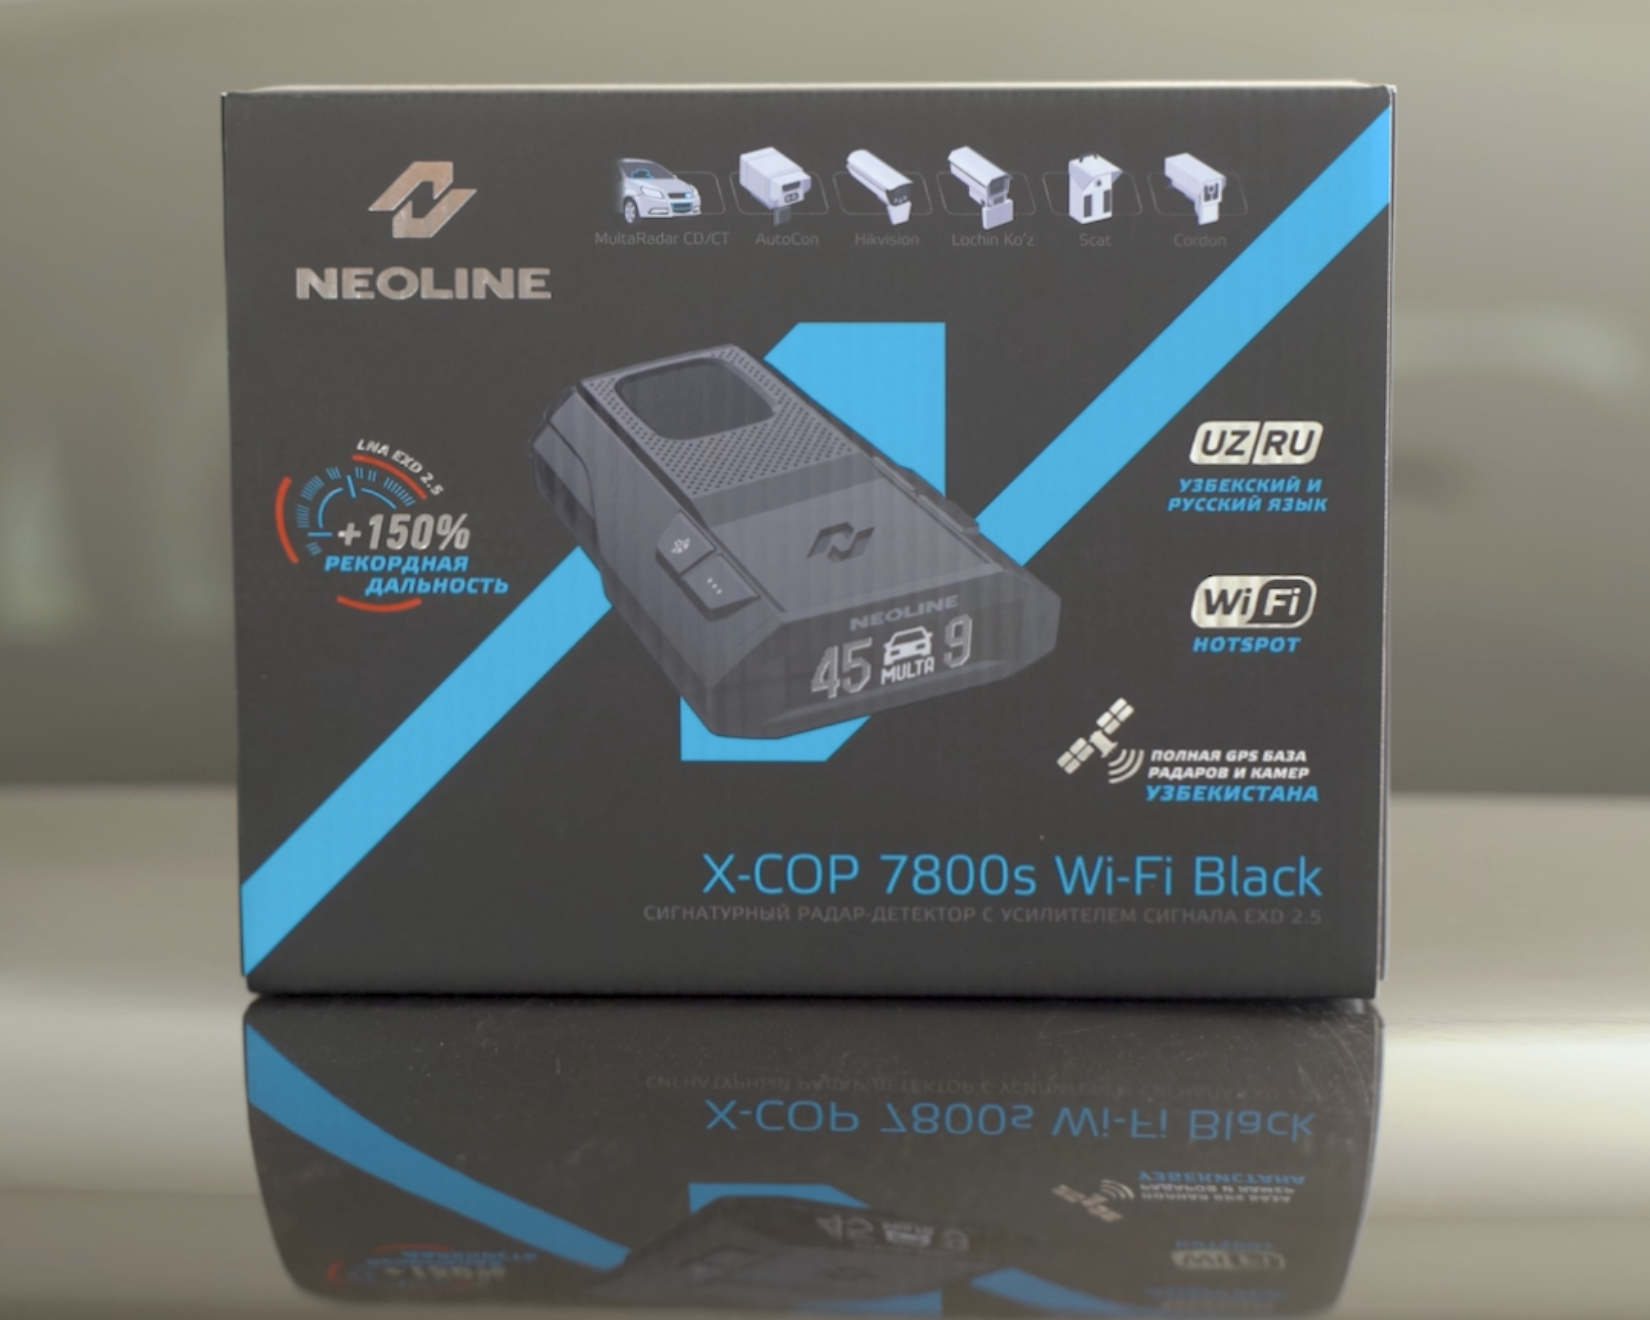 Лучший антирадар в Узбекистане: Neoline X-COP 7800s Wi-Fi Black против Мультирадар, Lochin и Кордон М - 2